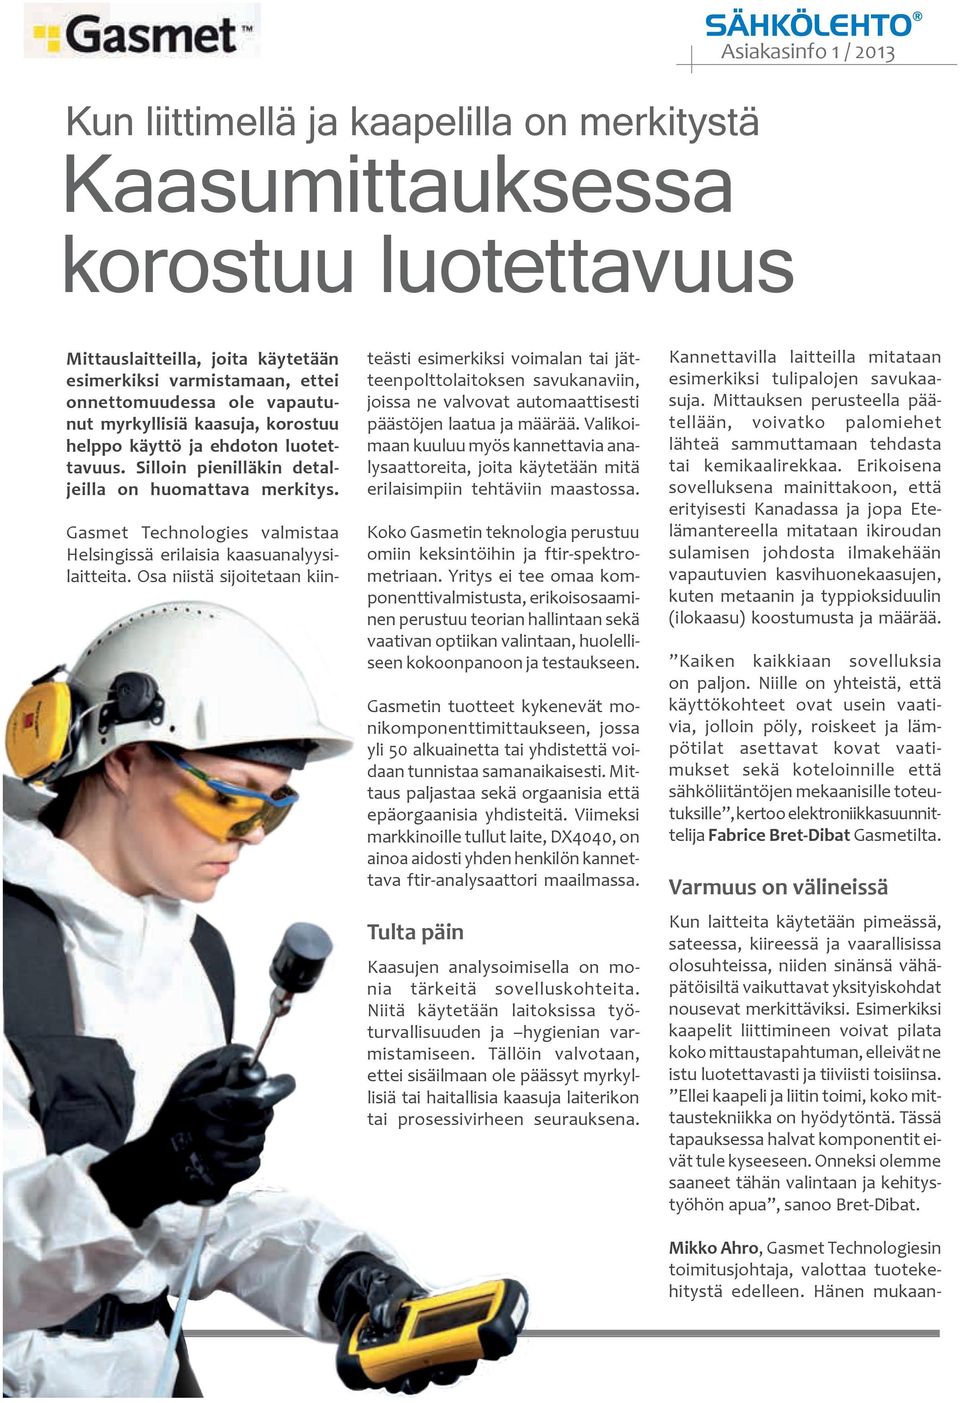 Gasmet Technologies valmistaa Helsingissä erilaisia kaasuanalyysilaitteita.